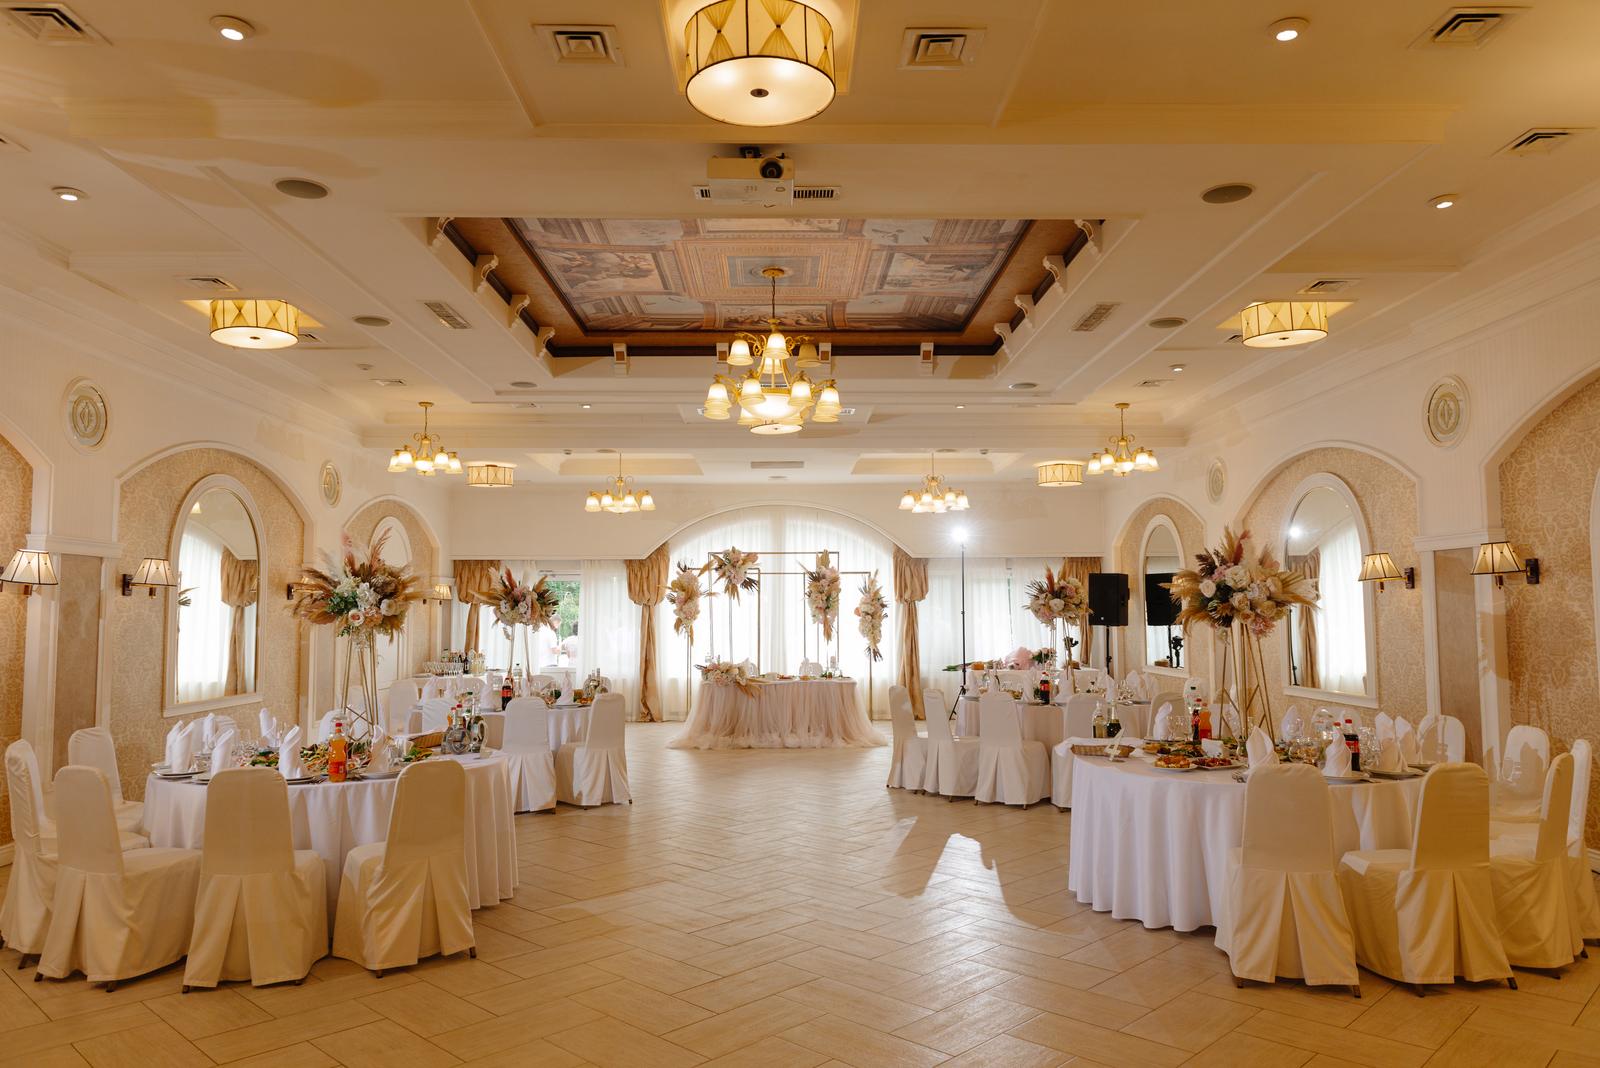 Plan stołów weselnych – ułatwienie dla gości czy marnowanie pieniędzy?